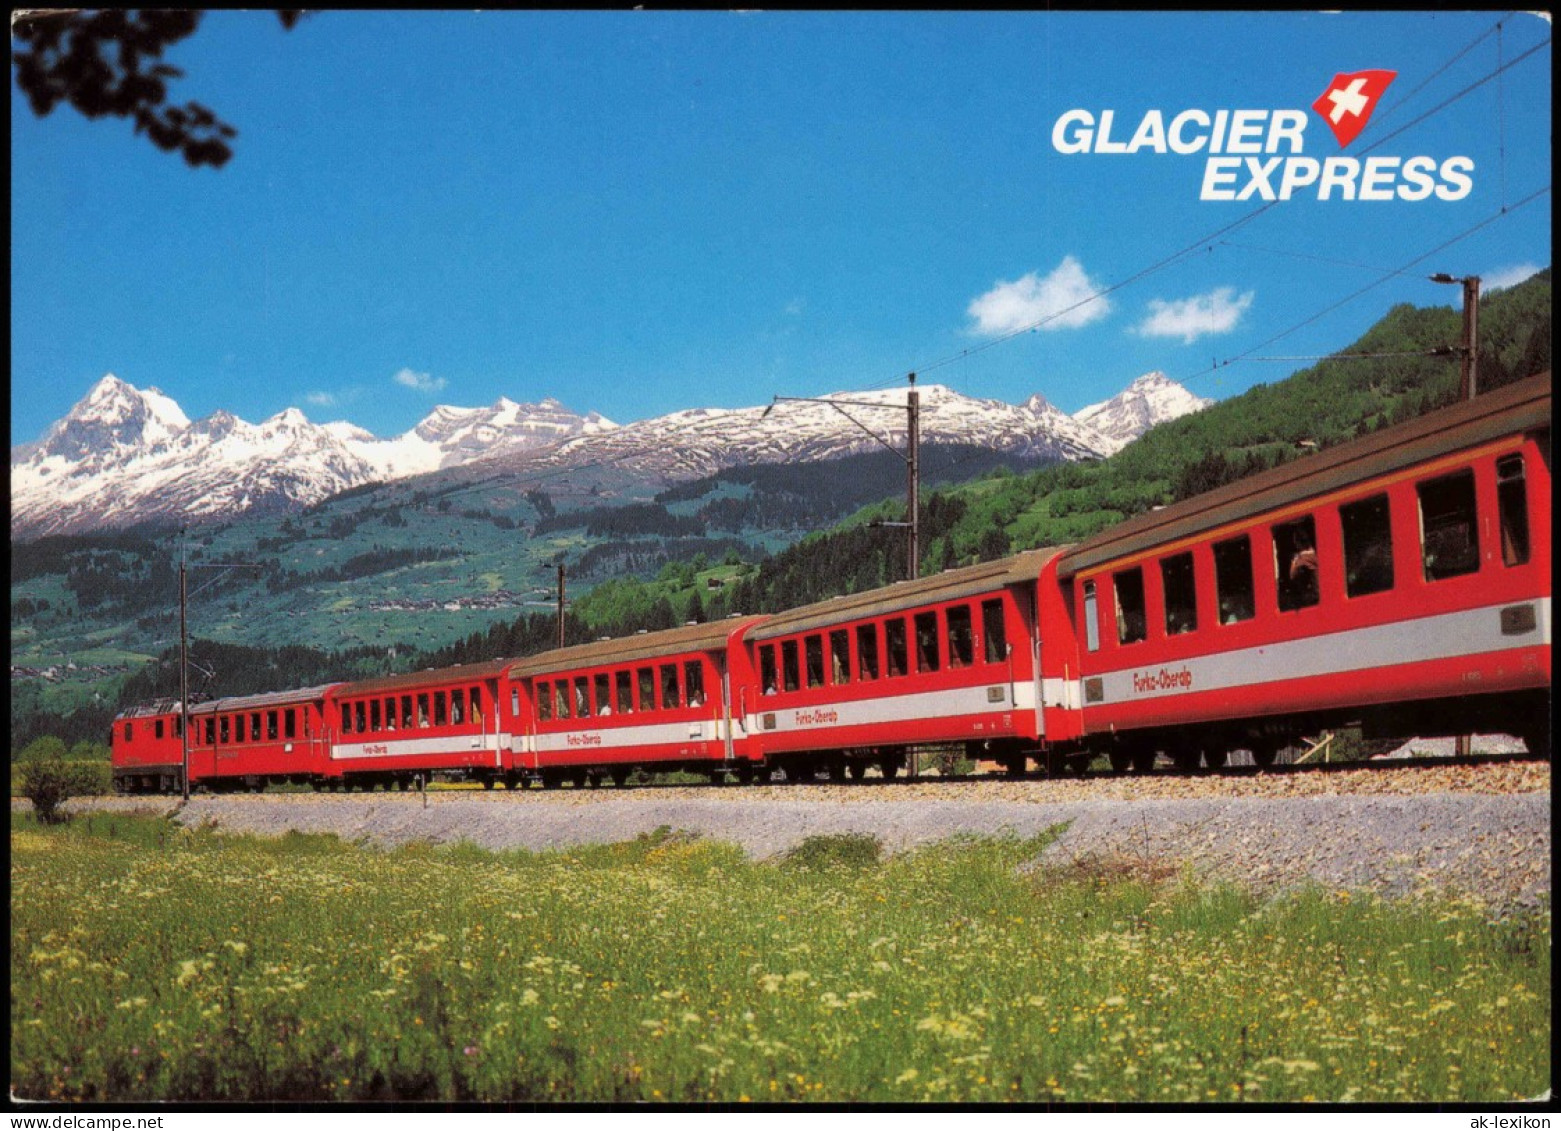 Der Glacier-Express In Der Surselva (Bündner Oberland Den Brigelserhörnern 1980 - Trains